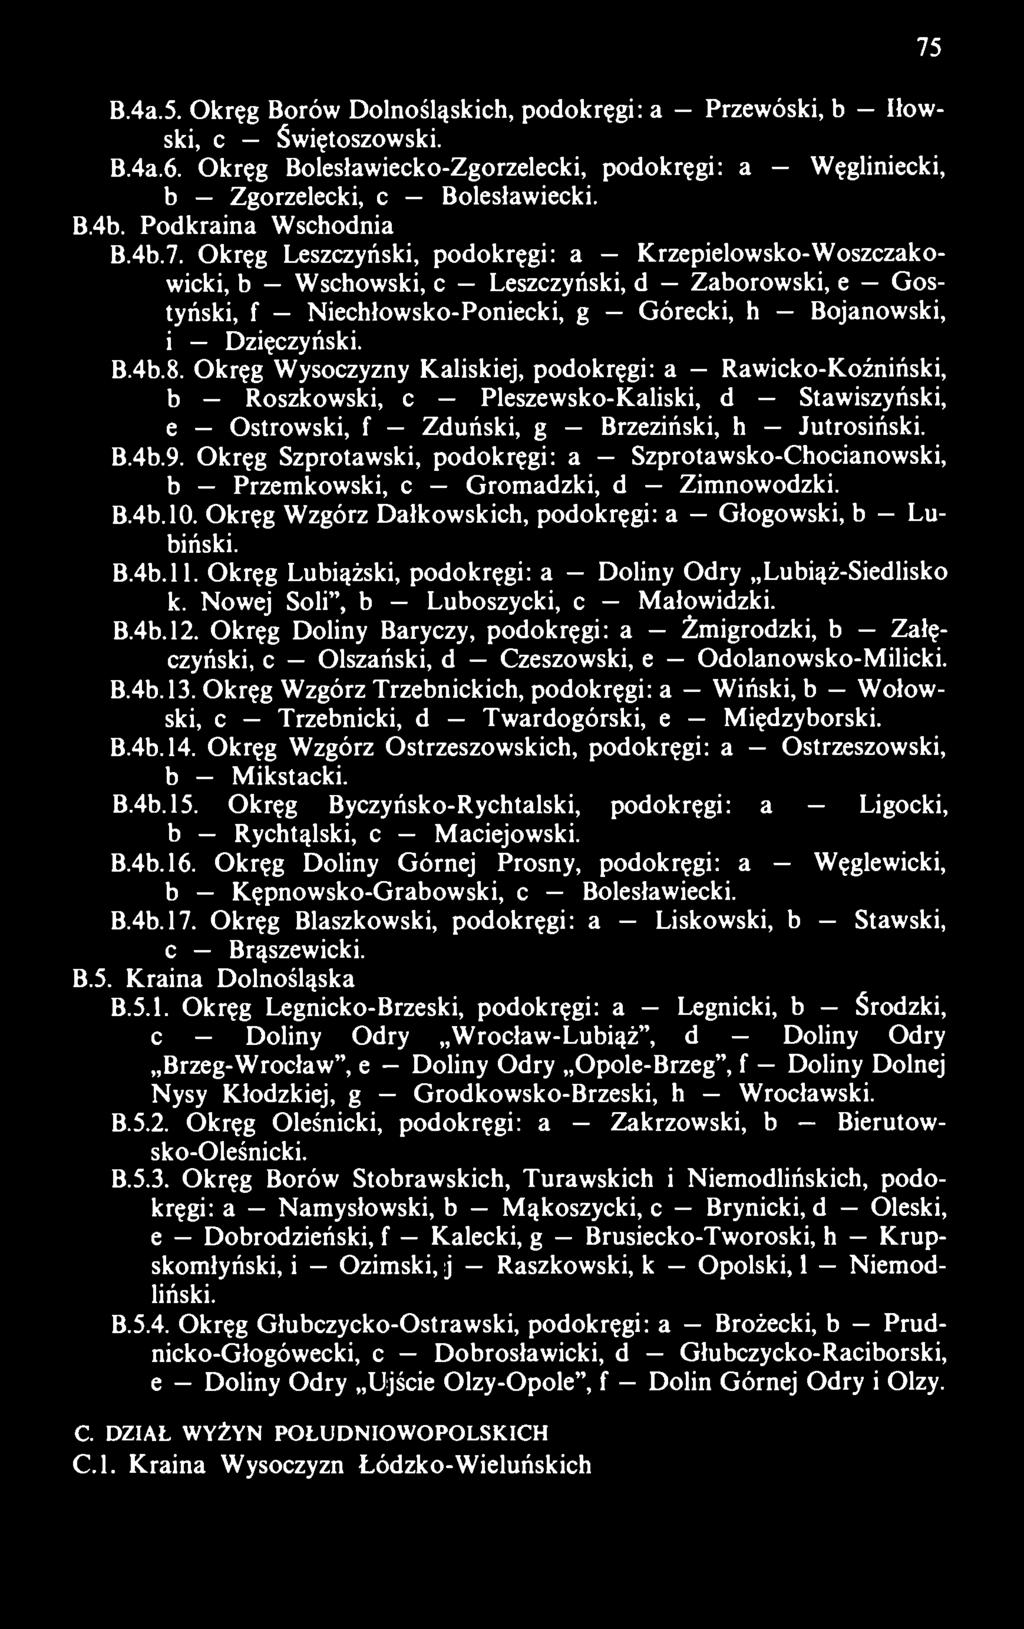 Okręg Leszczyński, podokręgi: a Krzepielowsko-Woszczakowicki, b Wschowski, c Leszczyński, d Zaborowski, e Gostyński, f Niechłowsko-Poniecki, g Górecki, h Bojanowski, i Dzięczyński. B.4b.8.